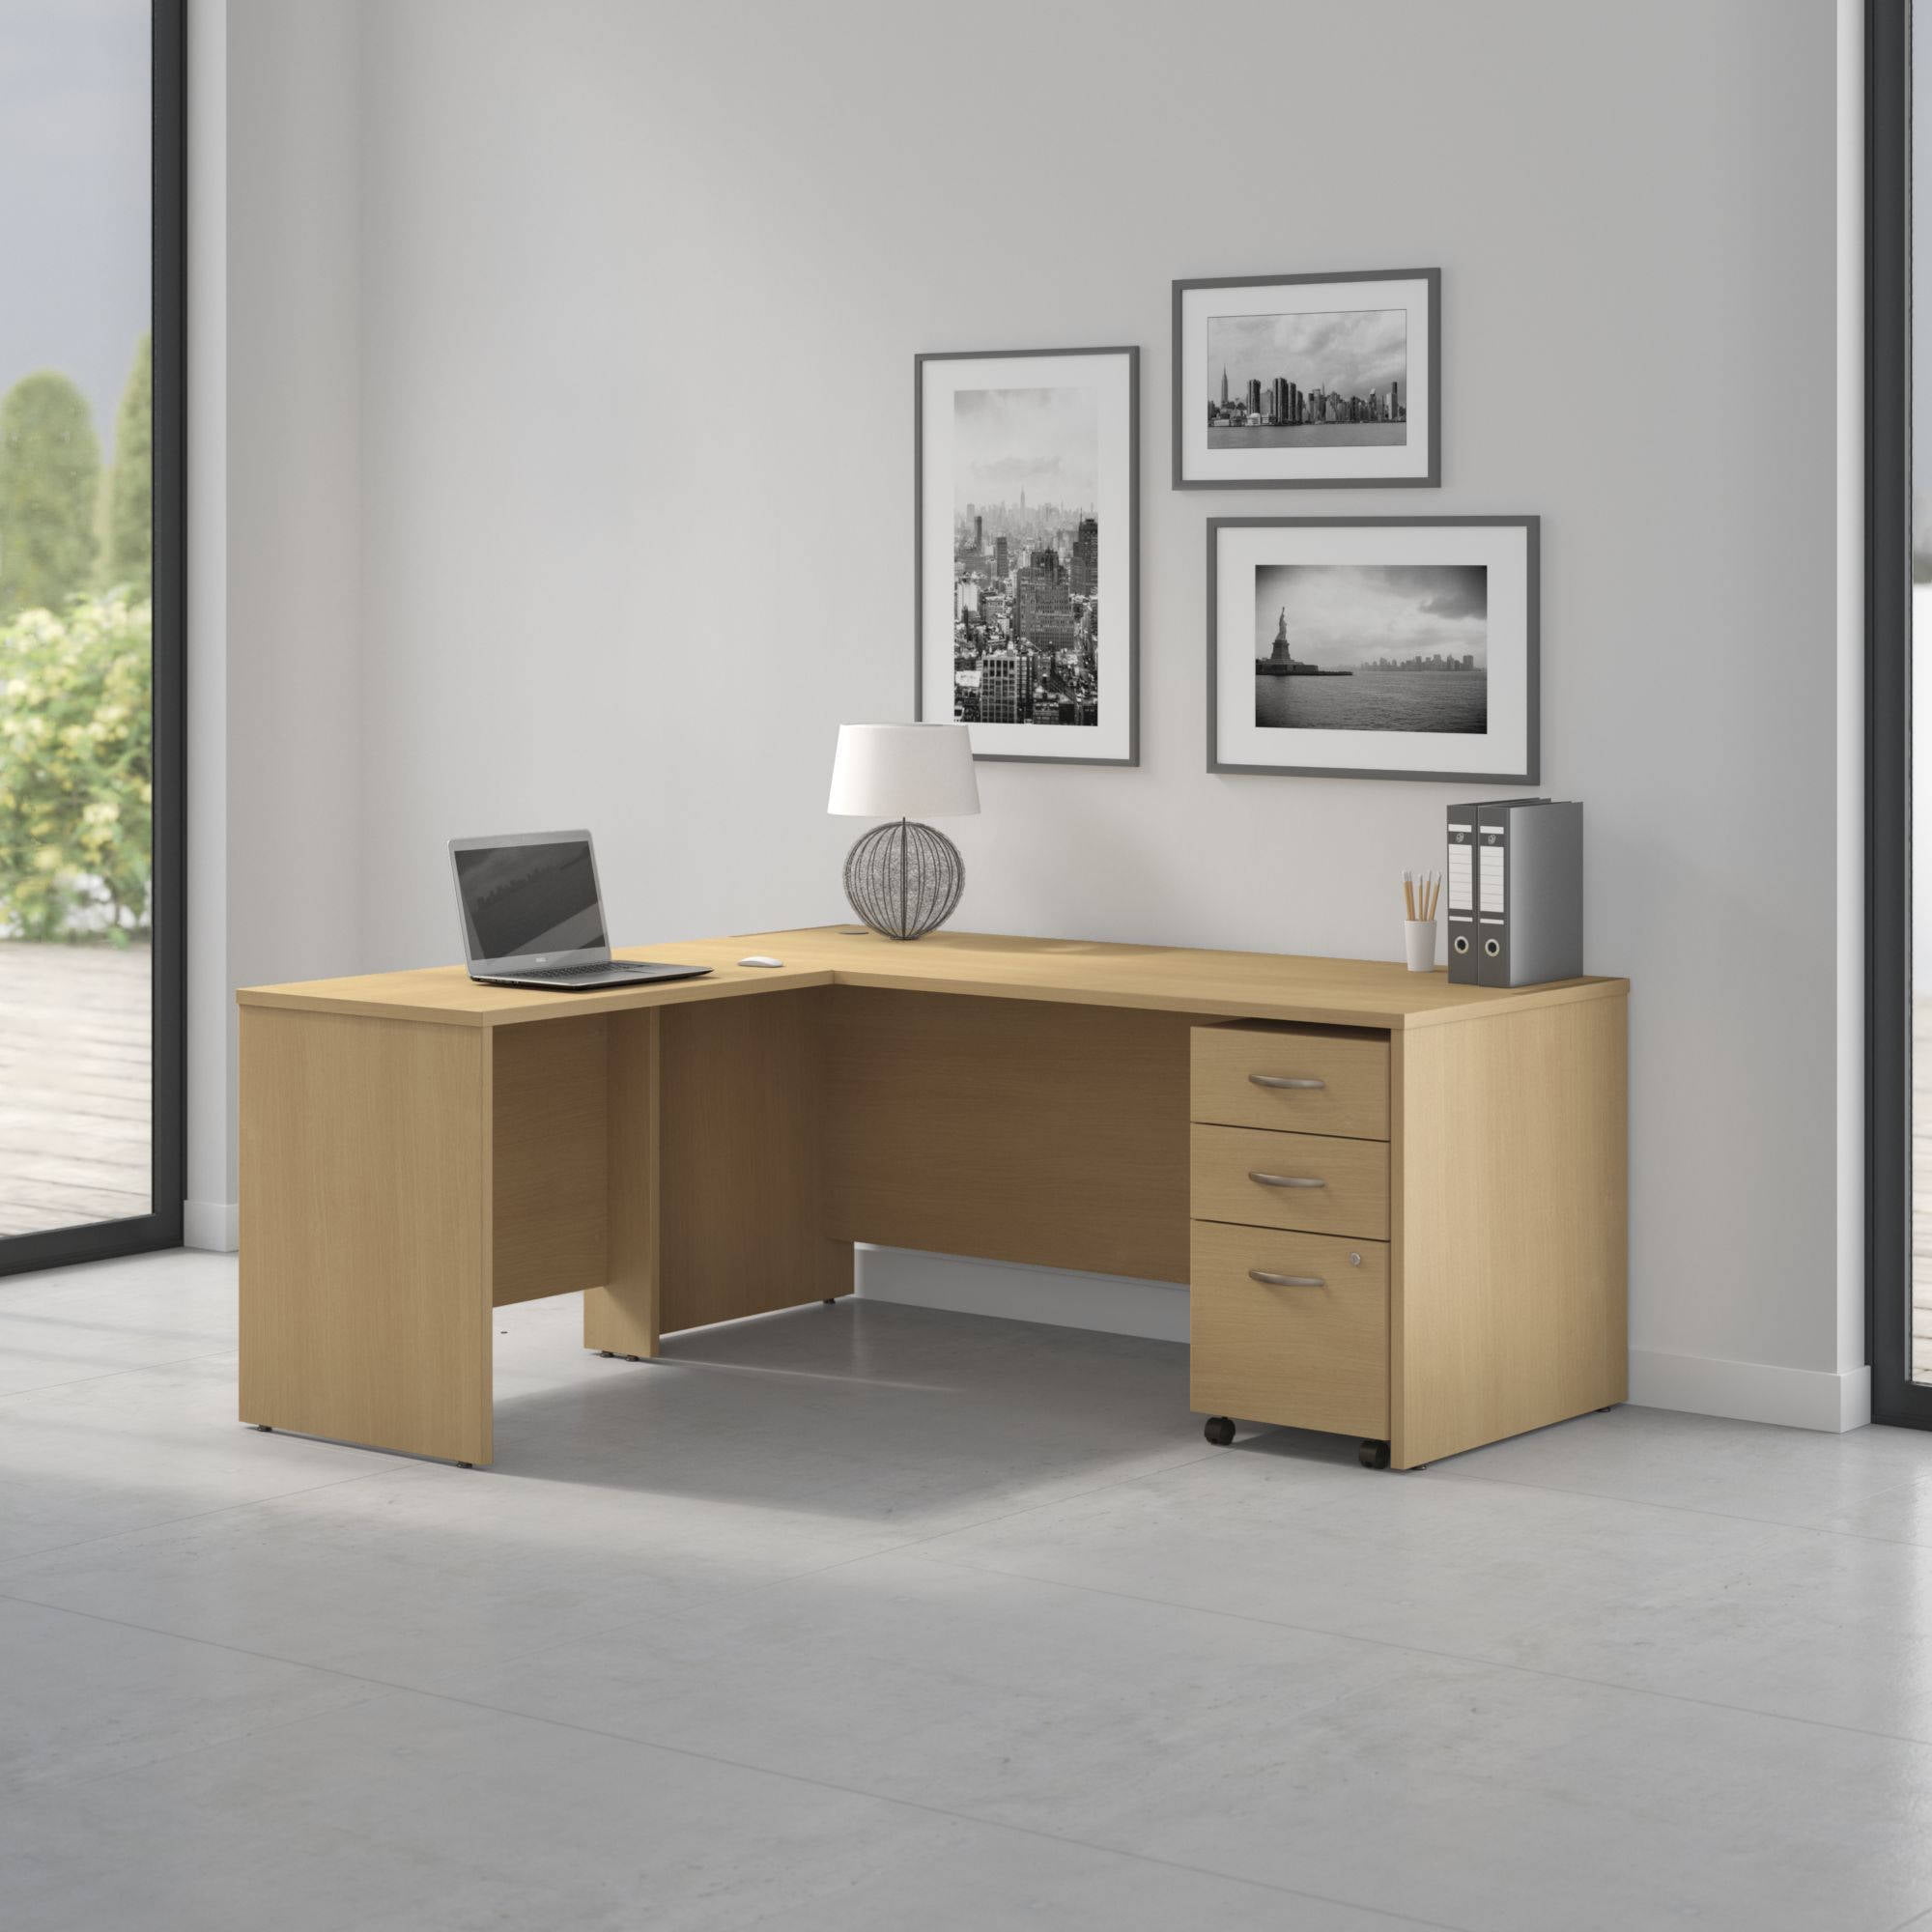 L Shaped Desk With Pedestal | vlr.eng.br